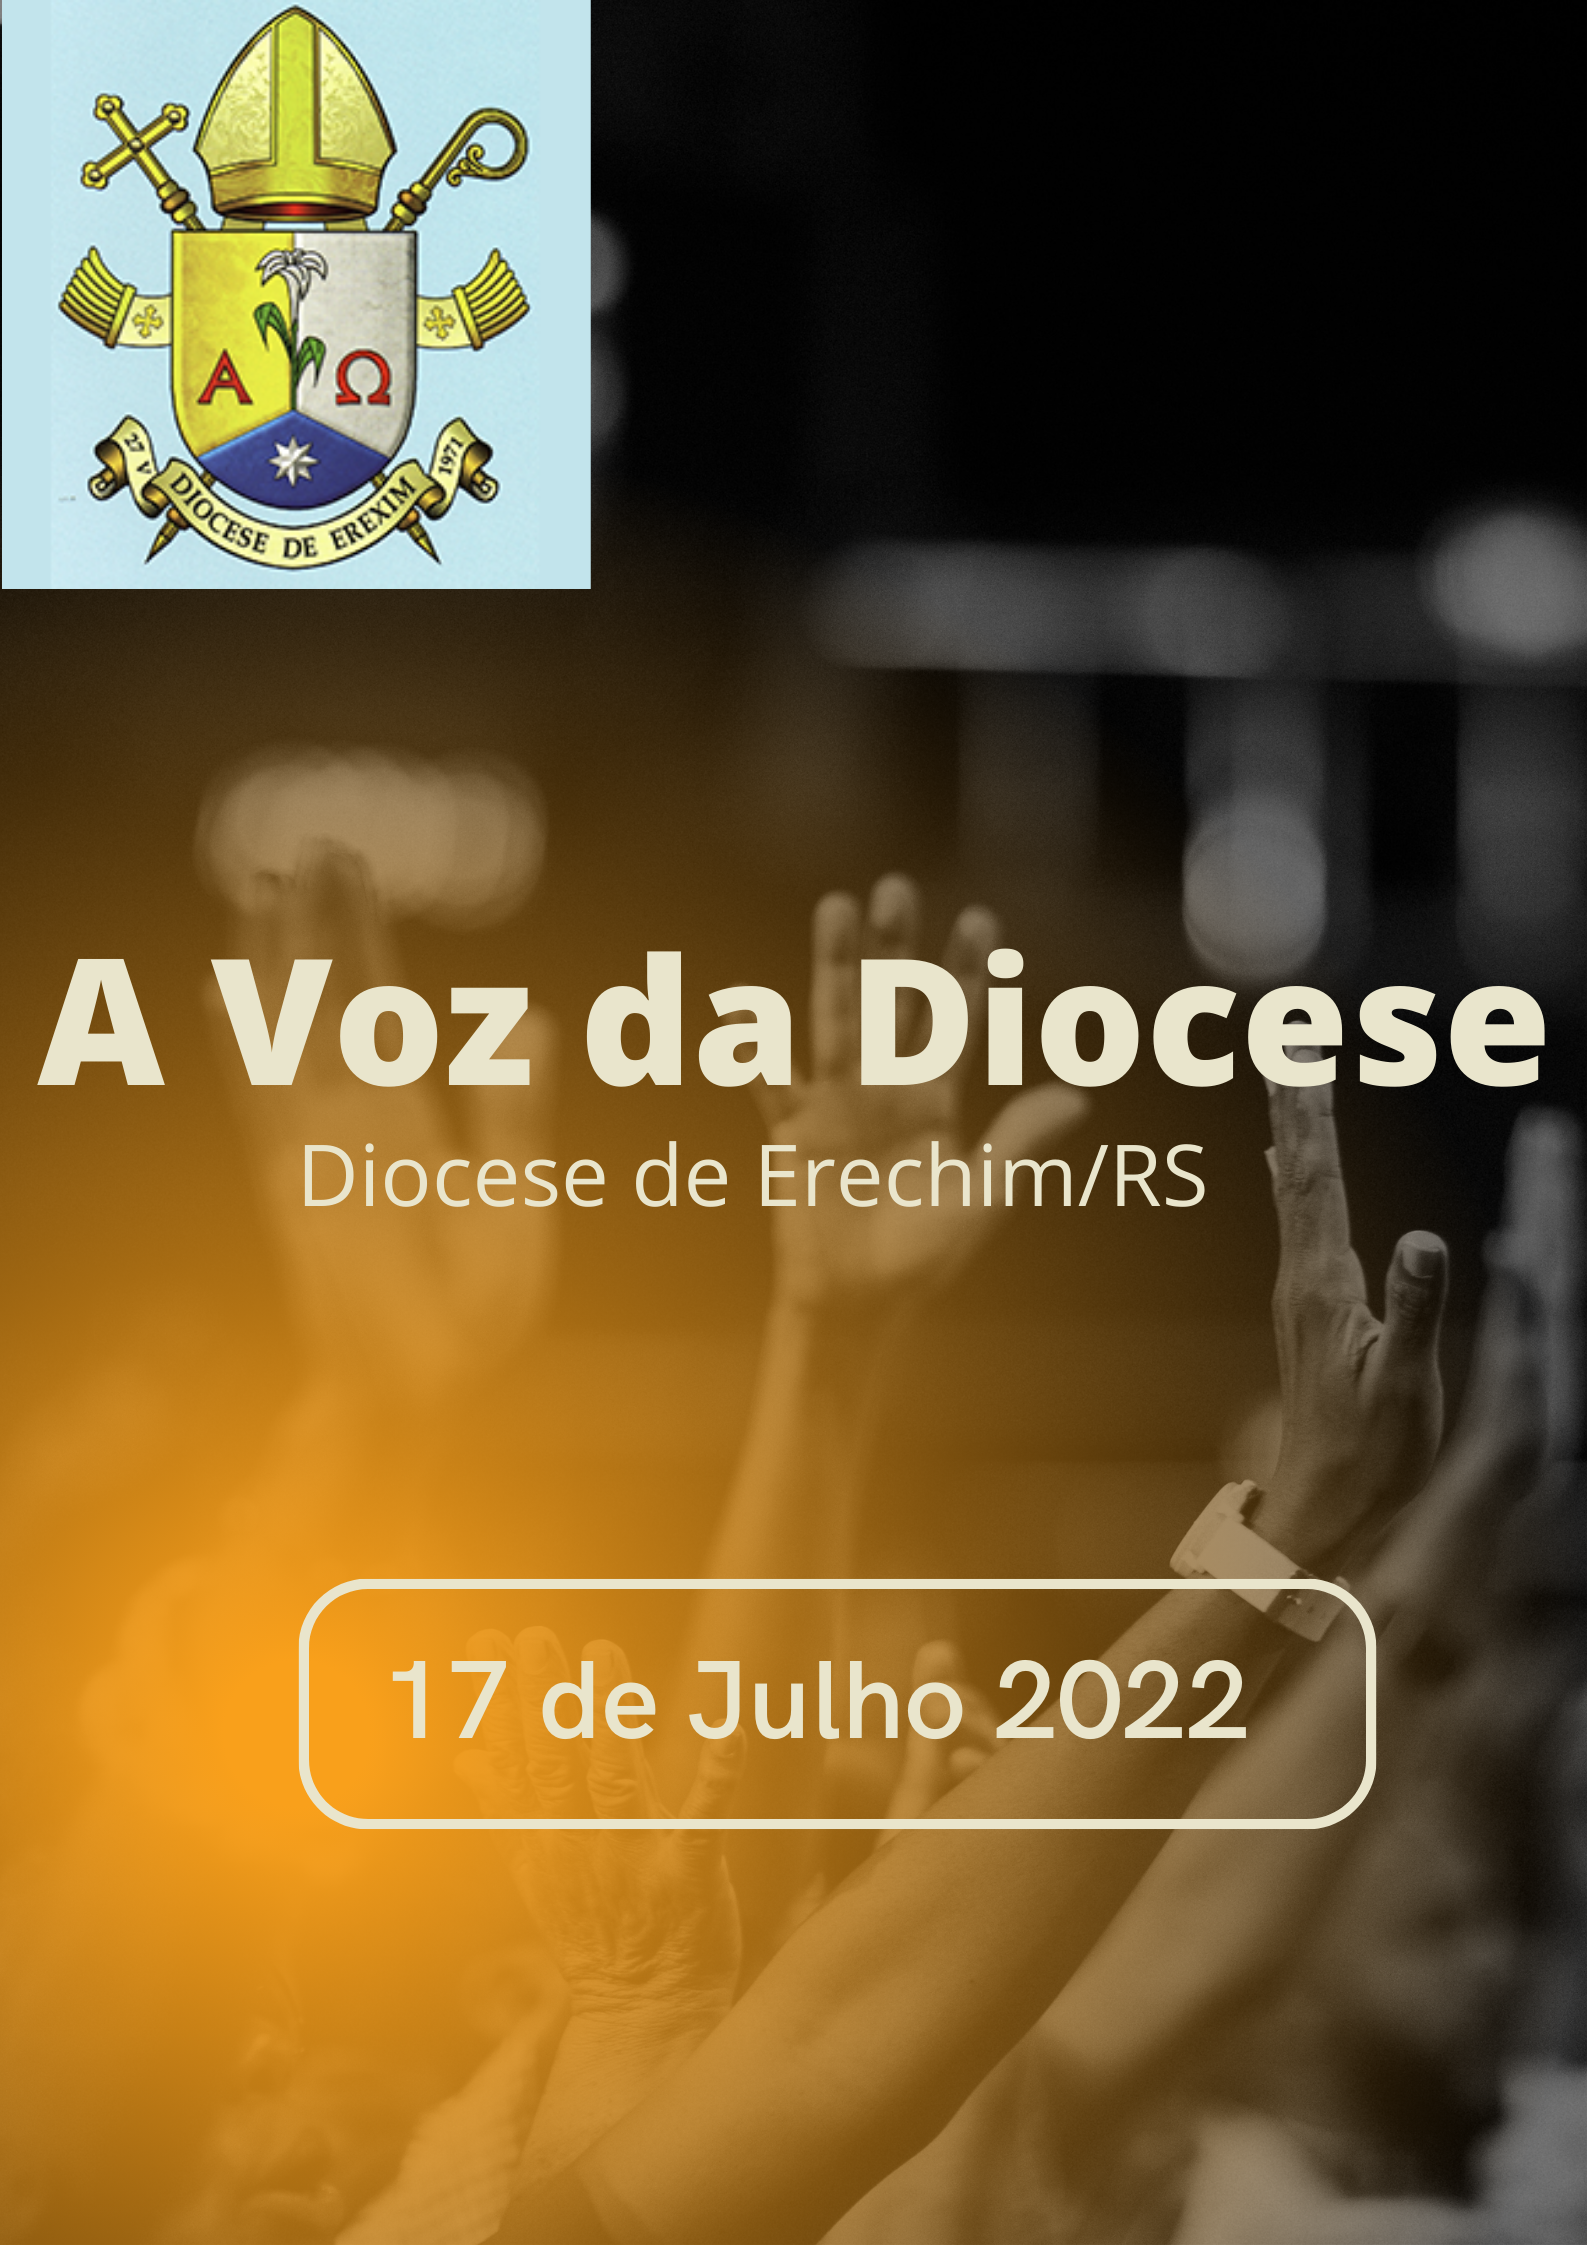 A voz da diocese 17 07 2022